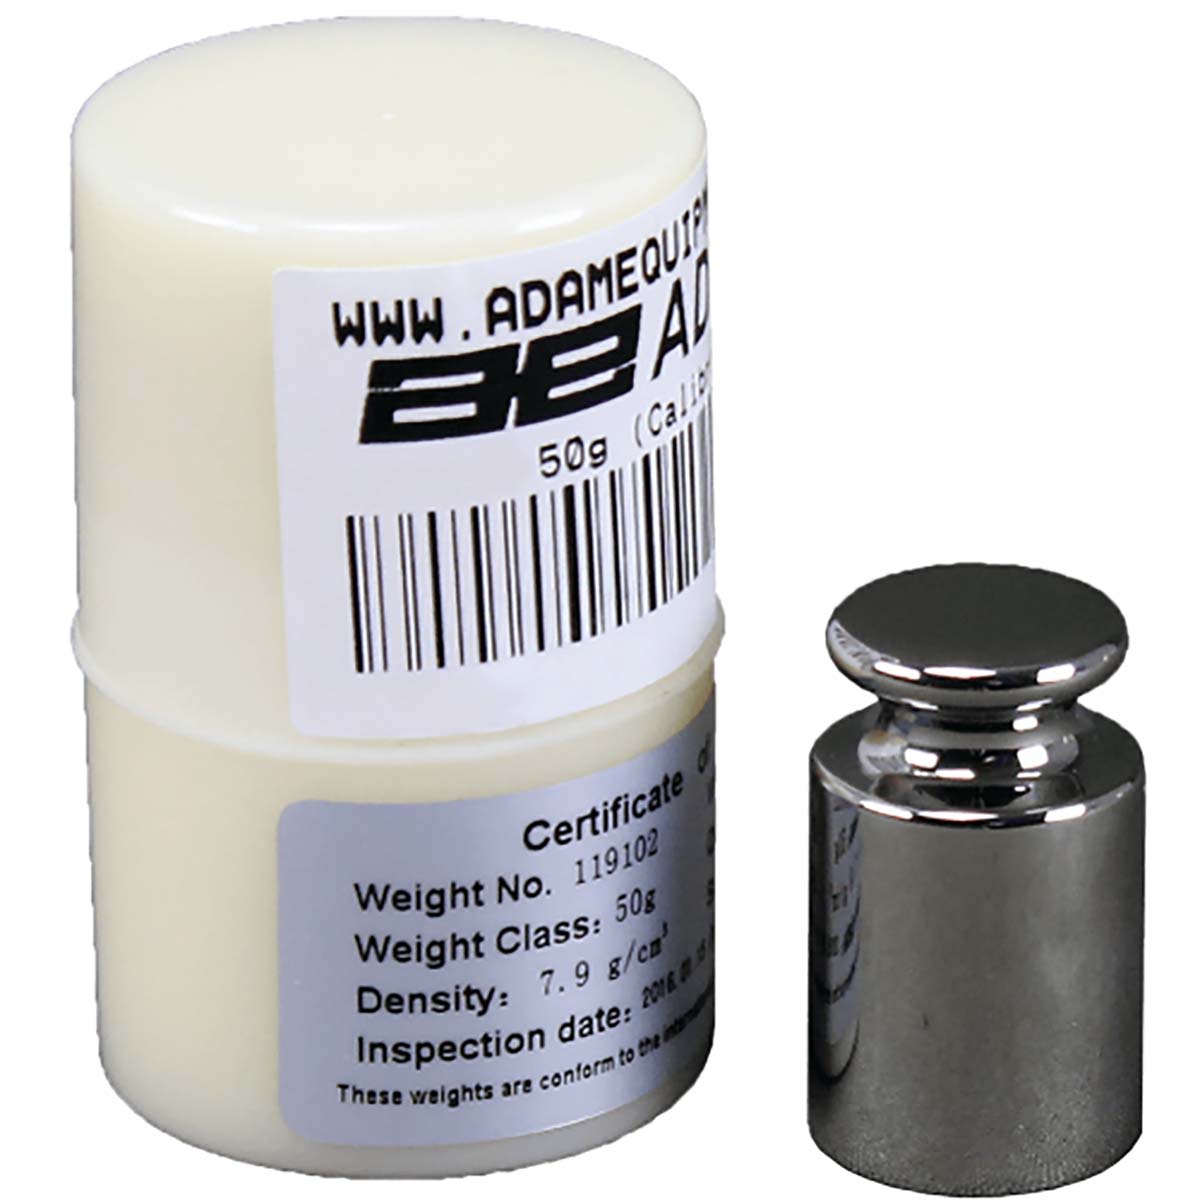 Adam Equipment Co Ltd 50g Calibration Weight